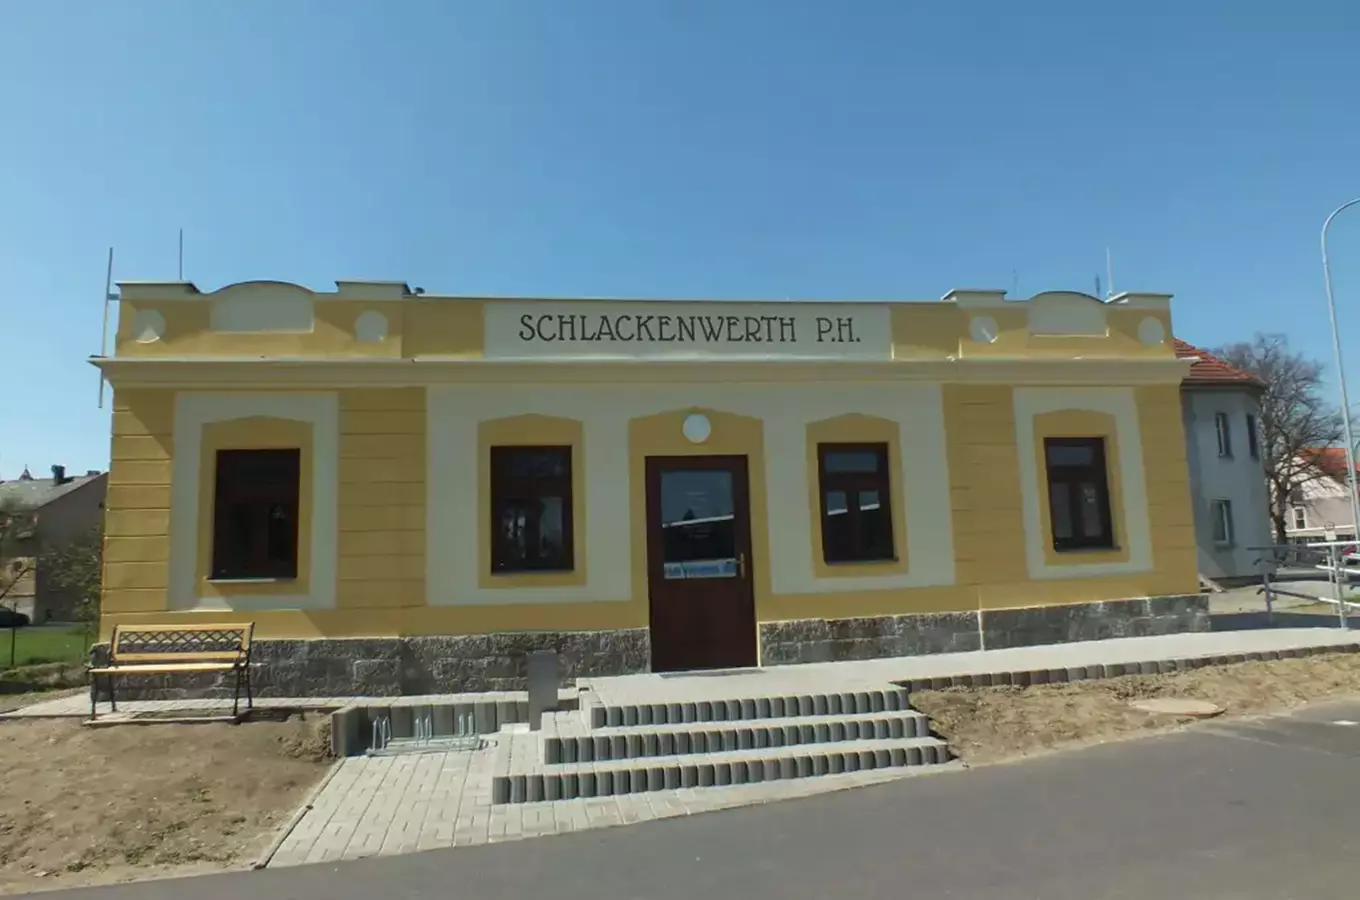 Bývalá železniční stanice Schlackenwerth v Ostrově – dnes odpočívárna a minimuzeum